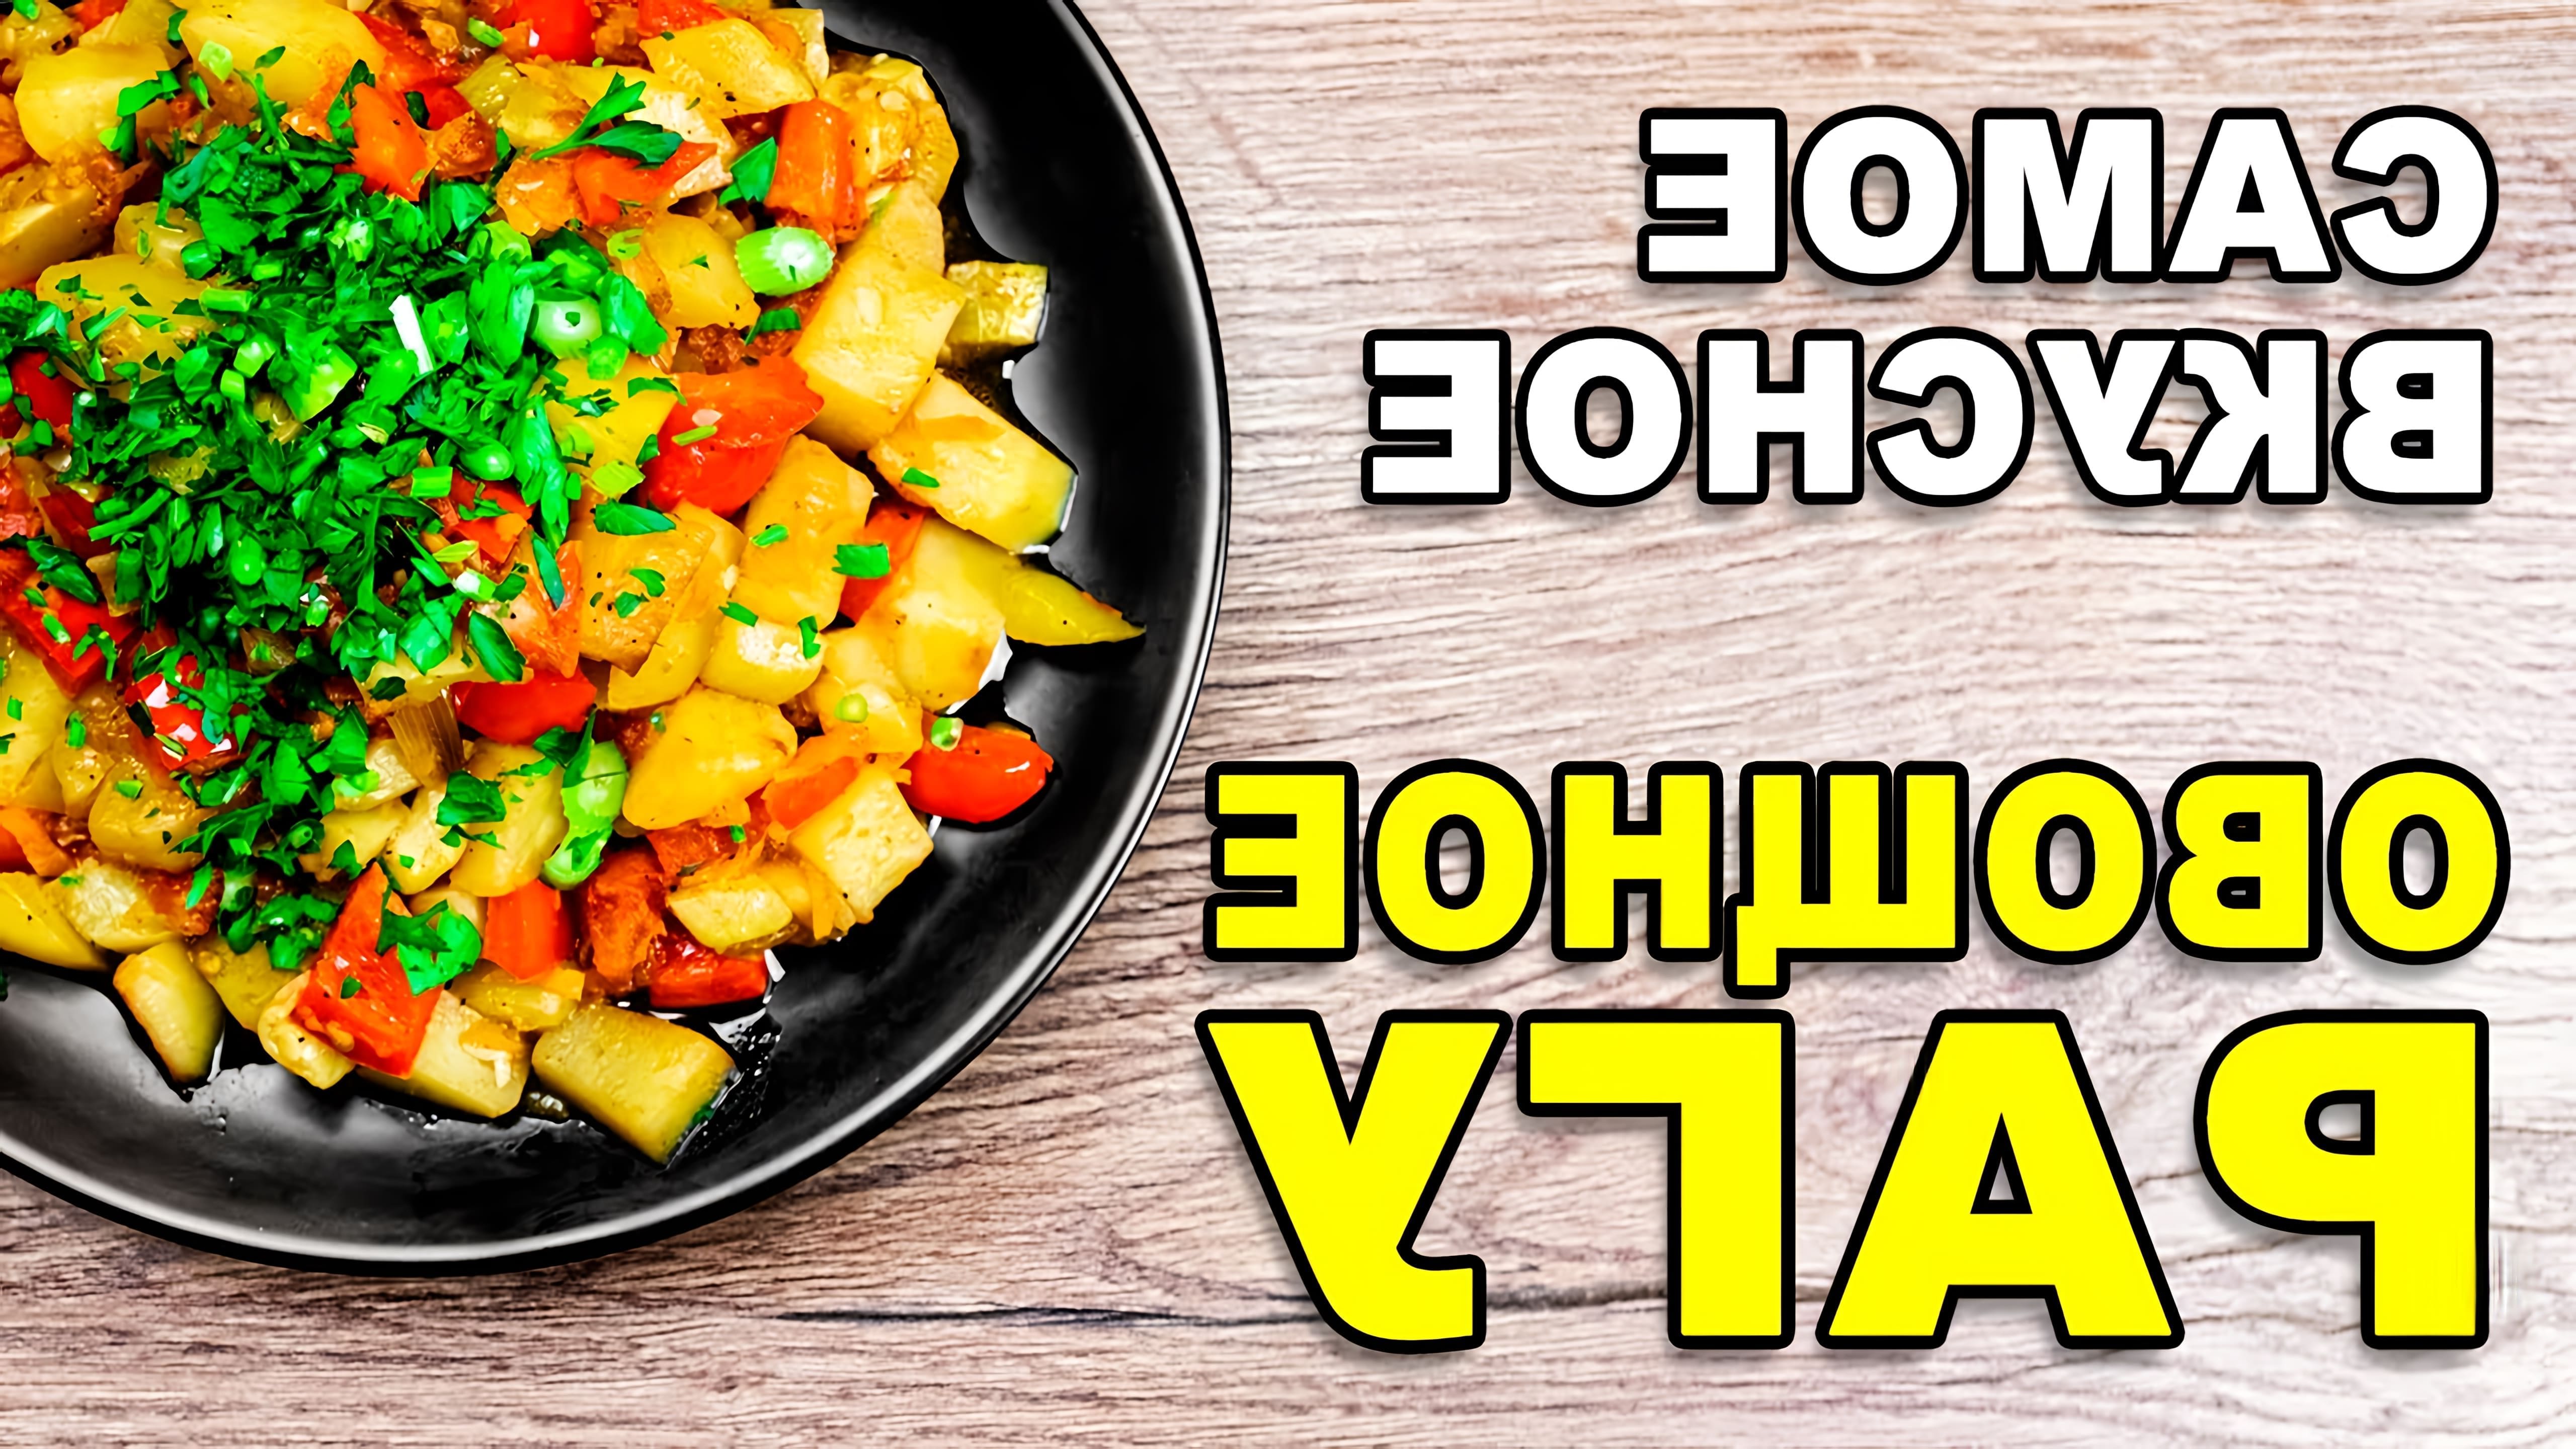 В этом видео демонстрируется рецепт приготовления овощного рагу с кабачками и картошкой